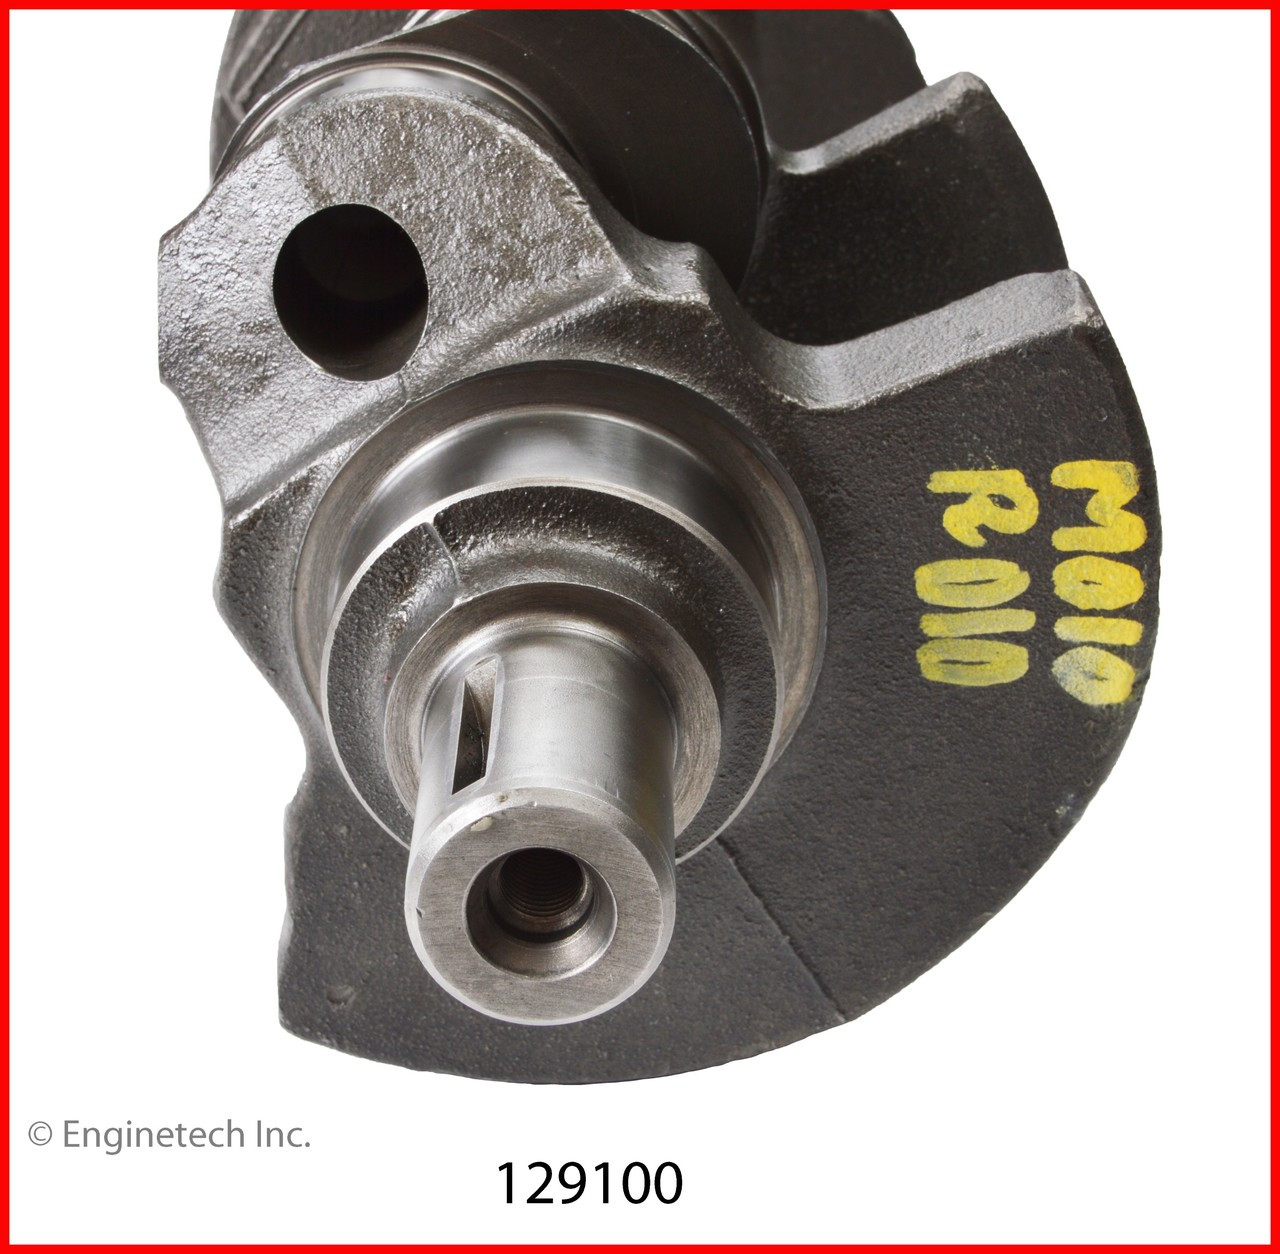 Crankshaft Kit - 1997 GMC Jimmy 4.3L (129100.K141)